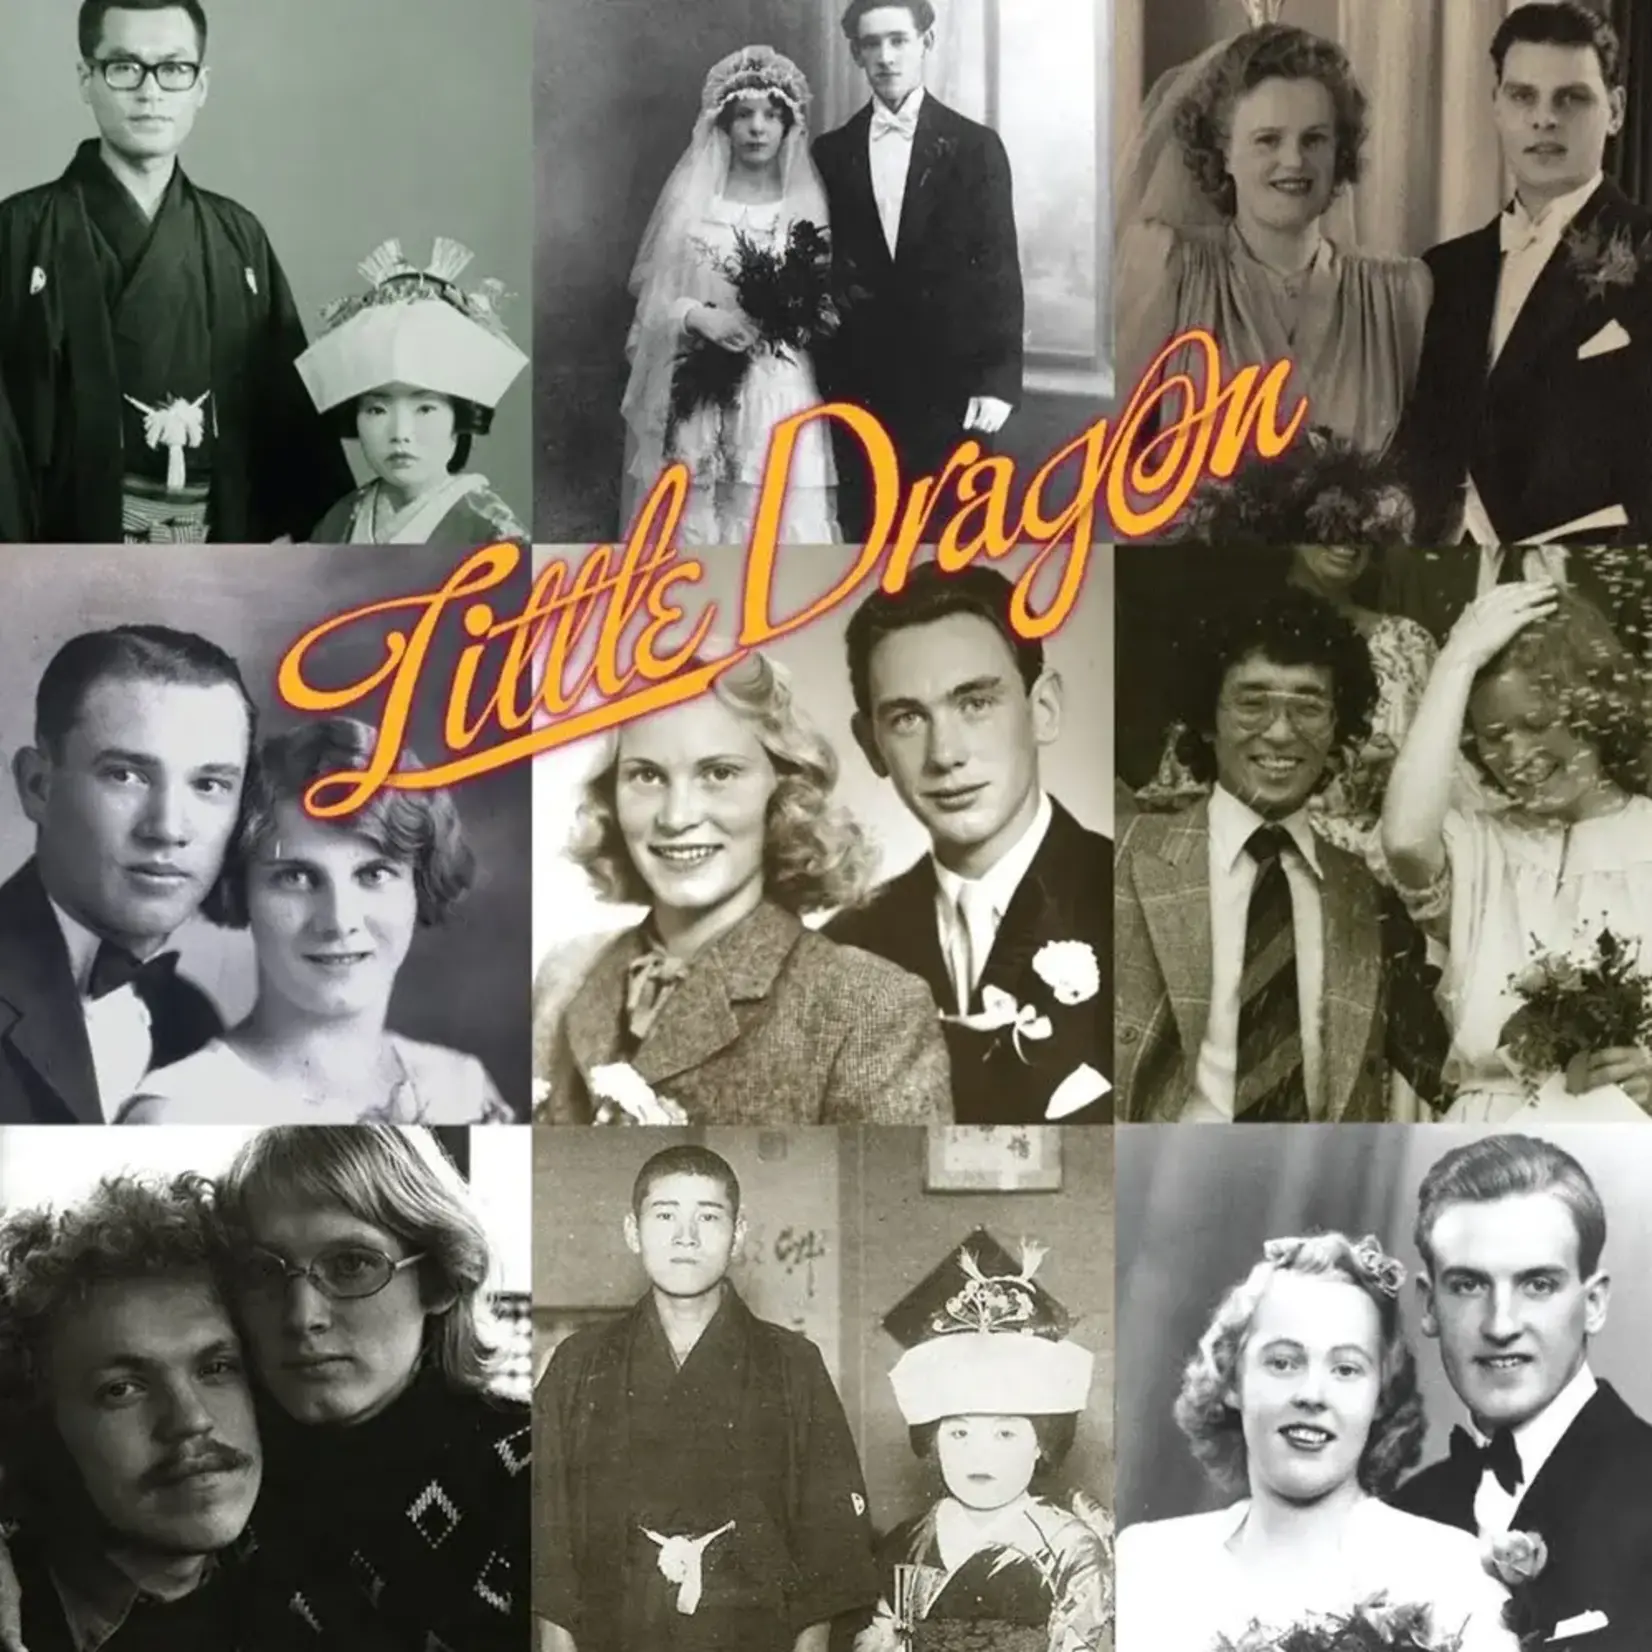 Little Dragon - Ritual Union (LP)